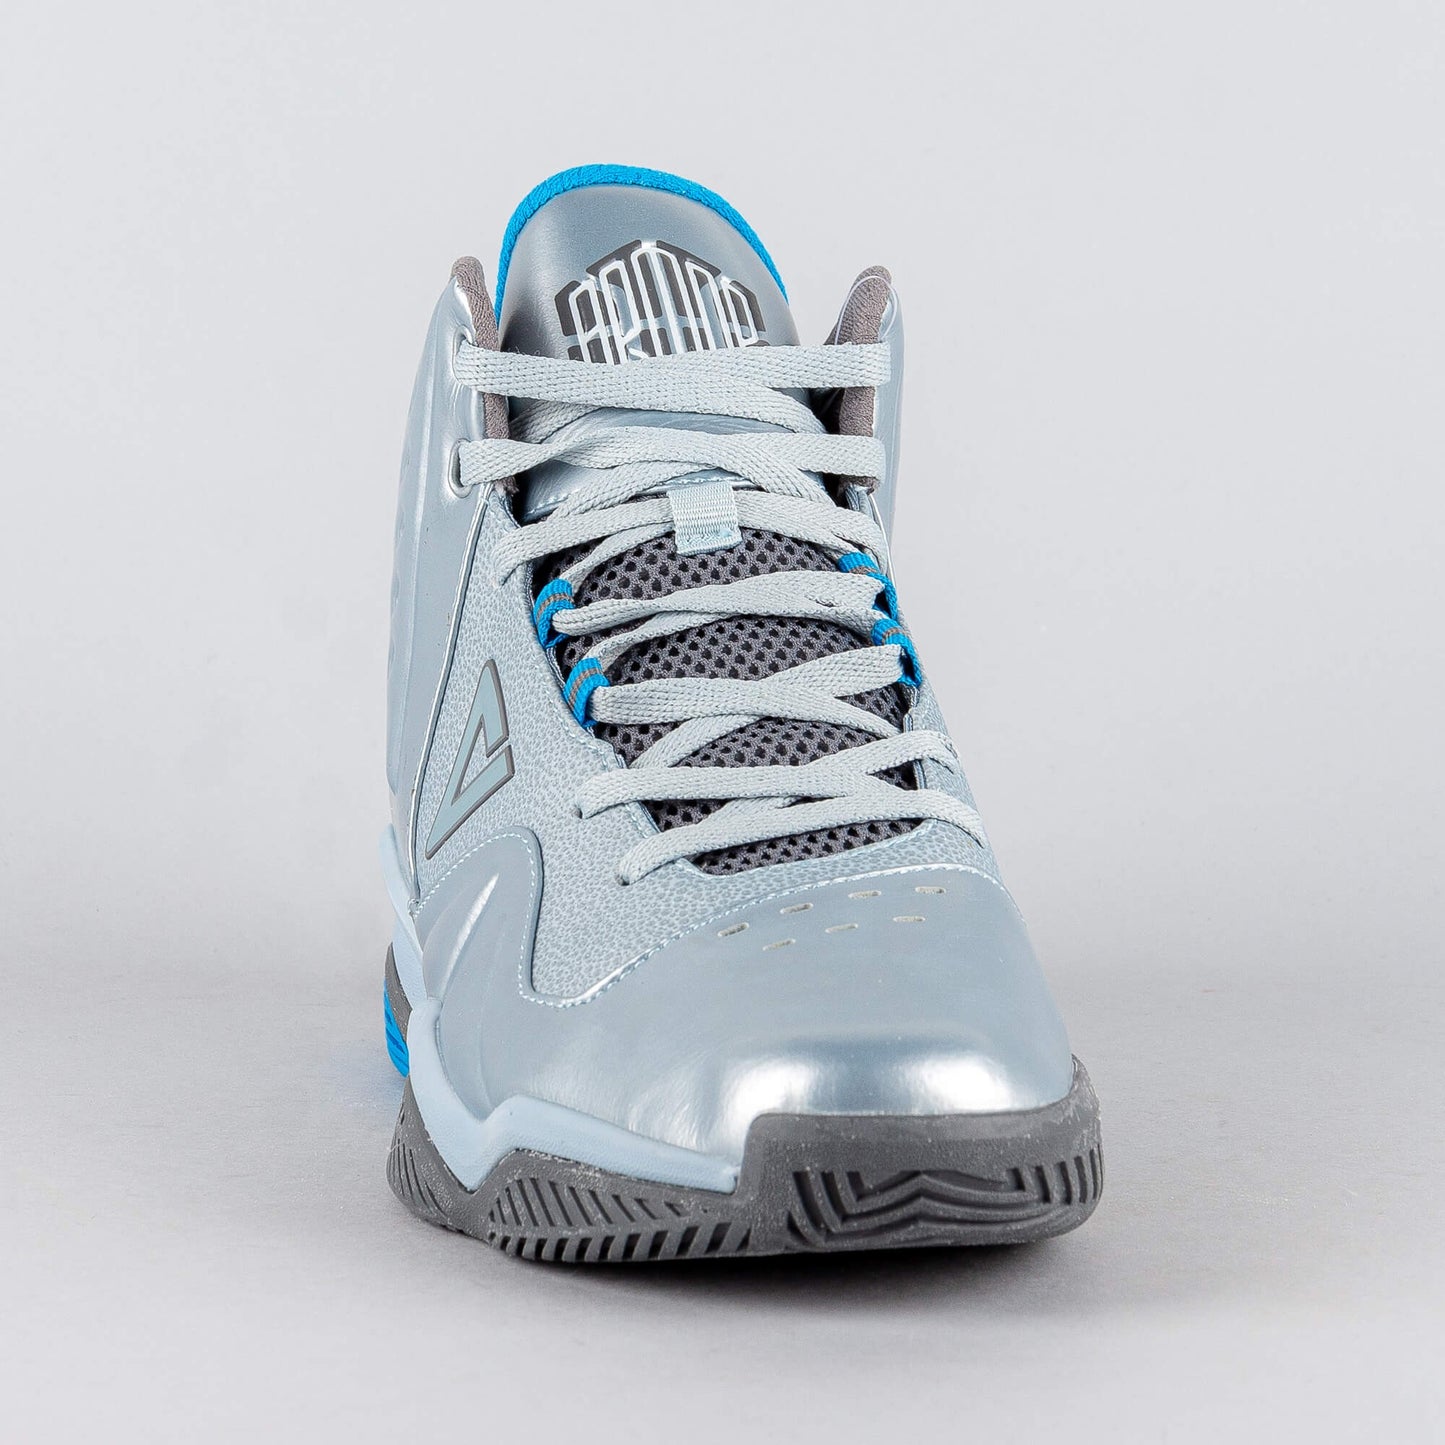 Peak Basketball Shoes Armor III Metallic Blue